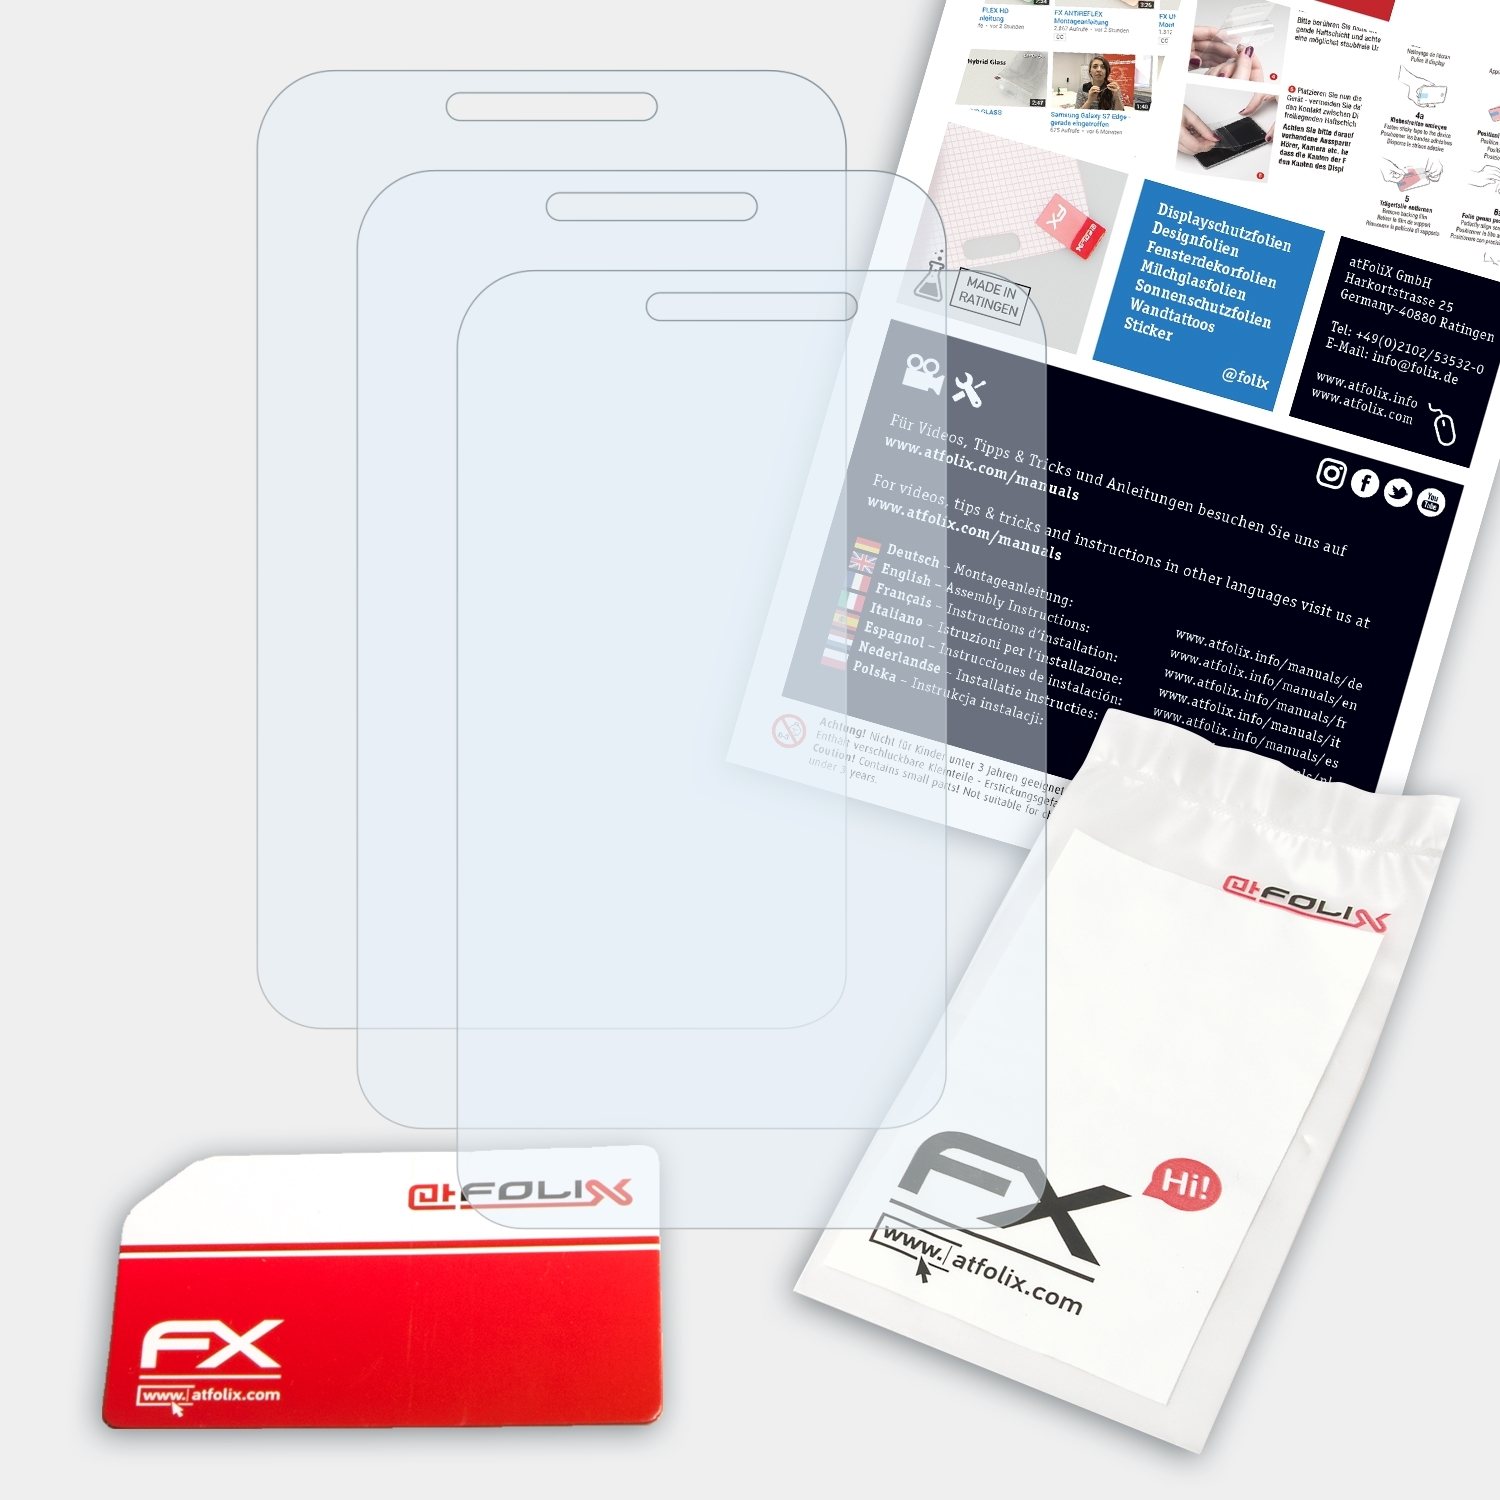 ATFOLIX 3x FX-Clear Displayschutz(für C2-01) Nokia